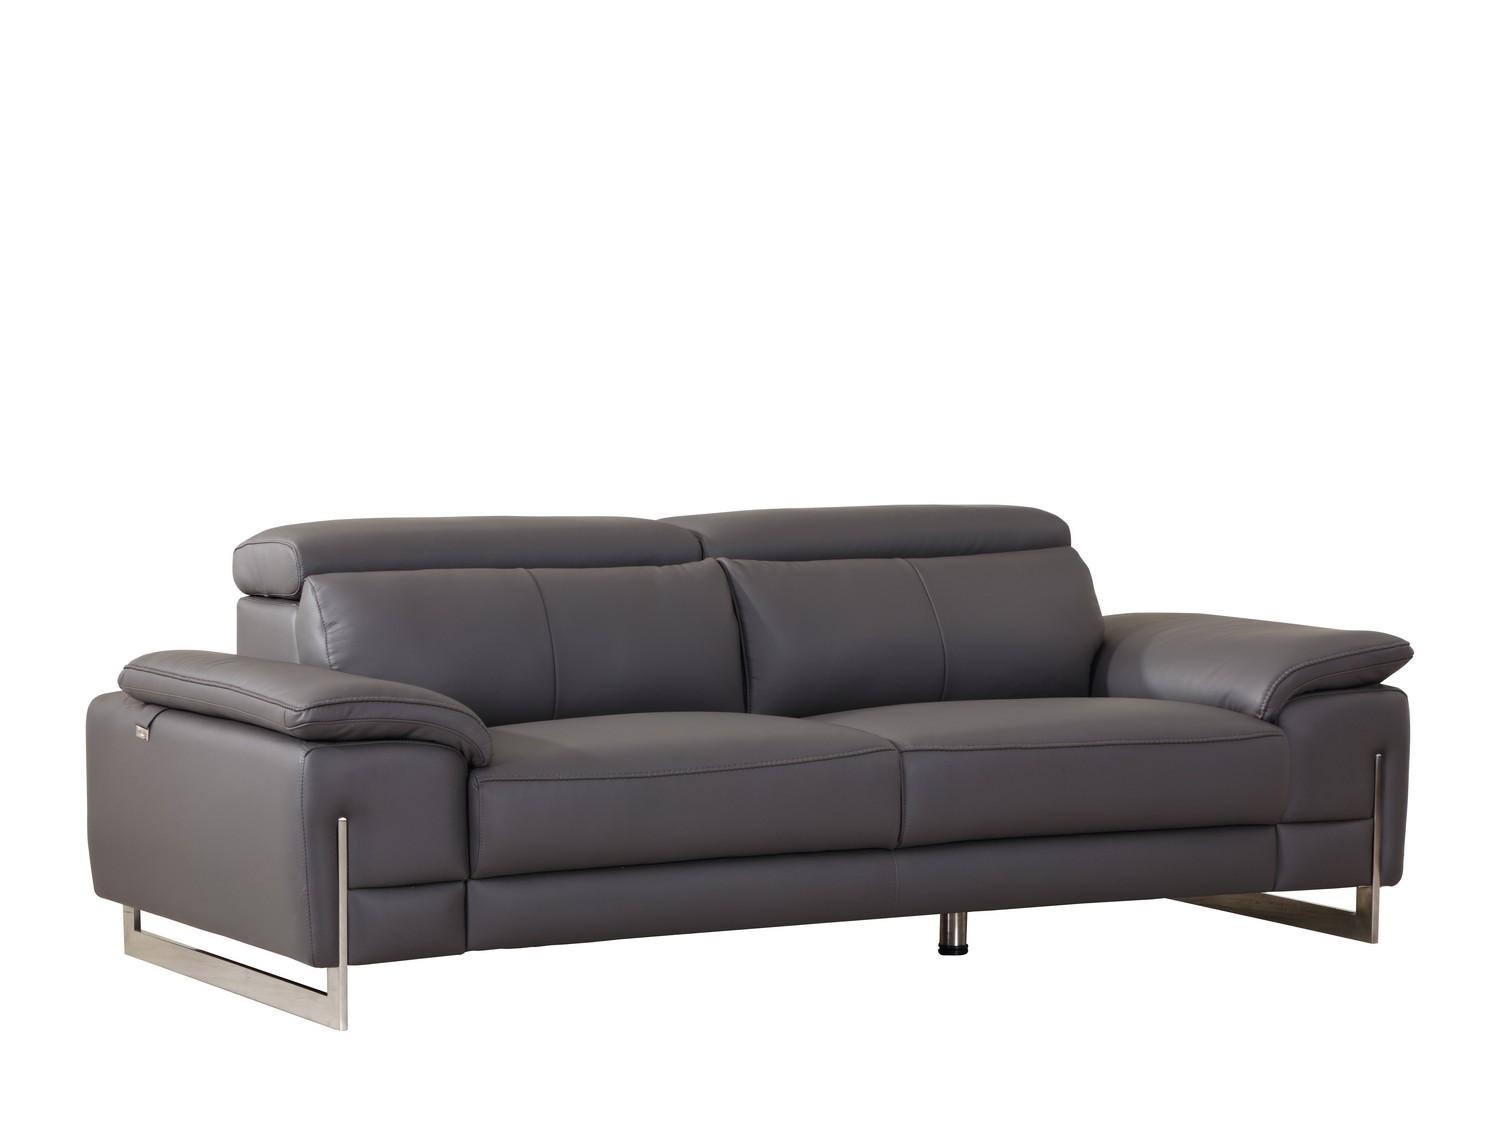 Contemporary Sofa 636 636-DARK-GRAY-S in Dark Gray Italian Leather